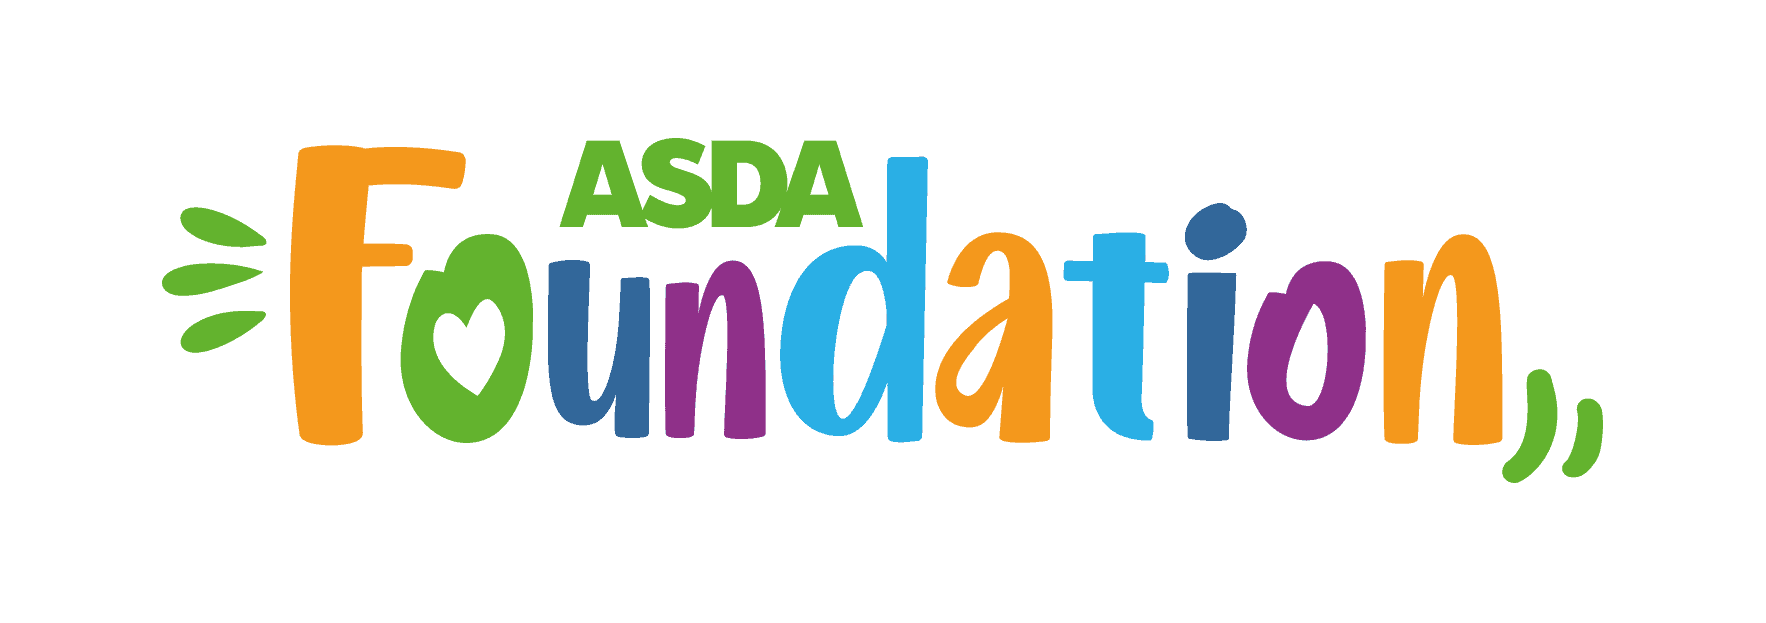 Asda Foundation logo